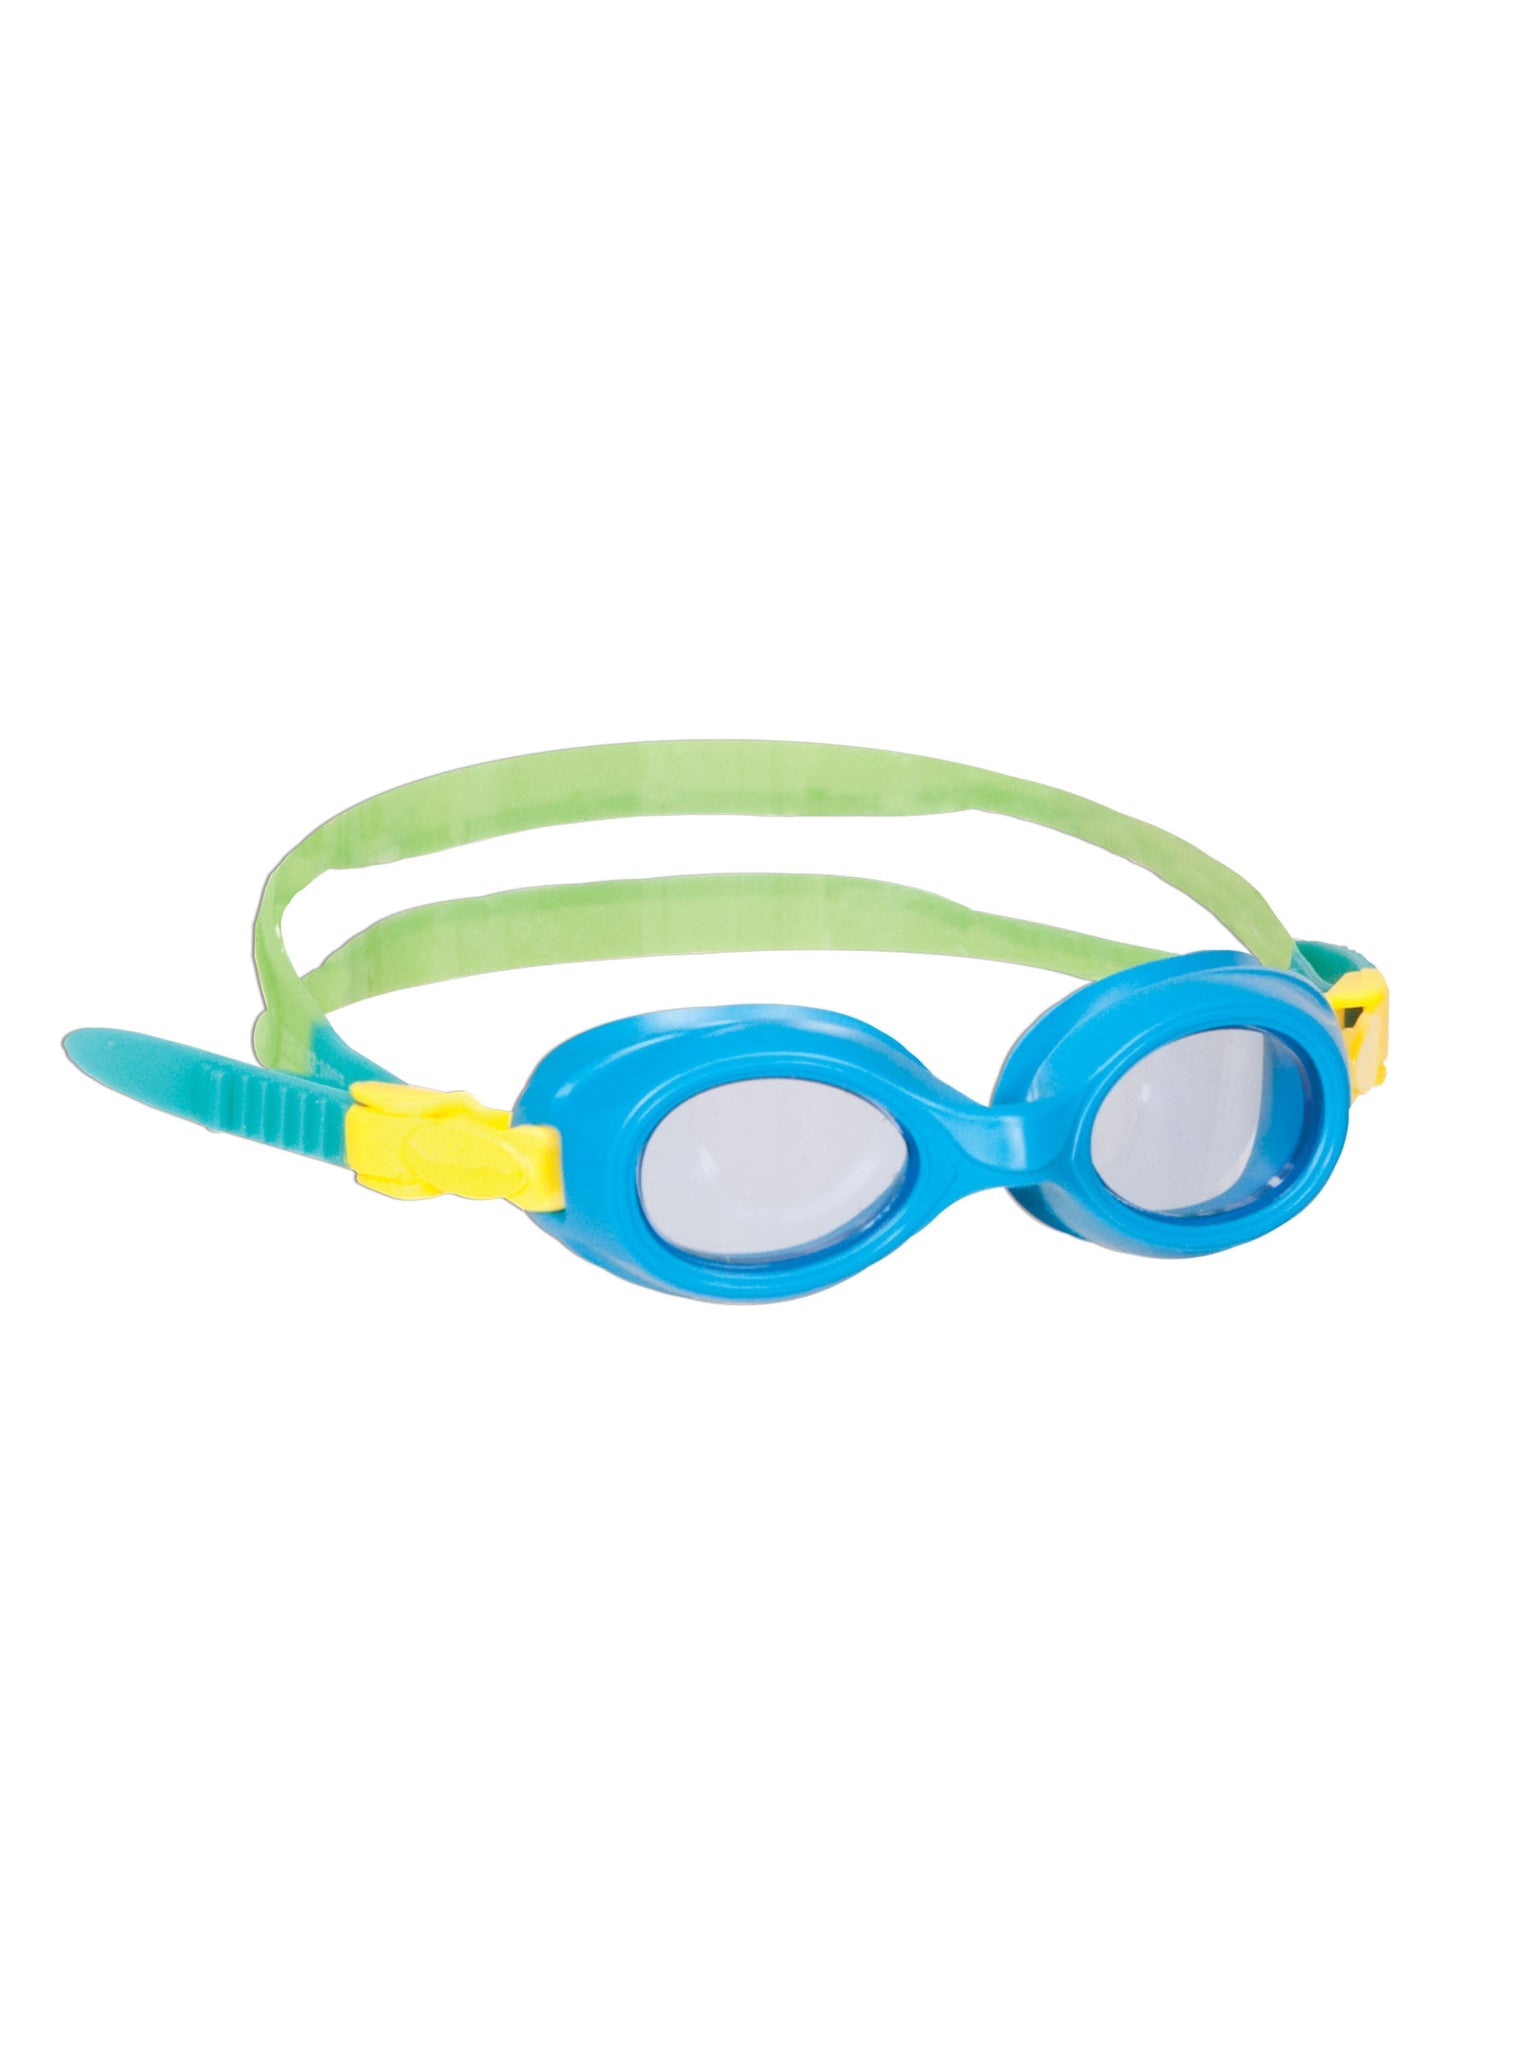 Lunettes de natation Jelly Bean pour enfants - Bleu/Clair